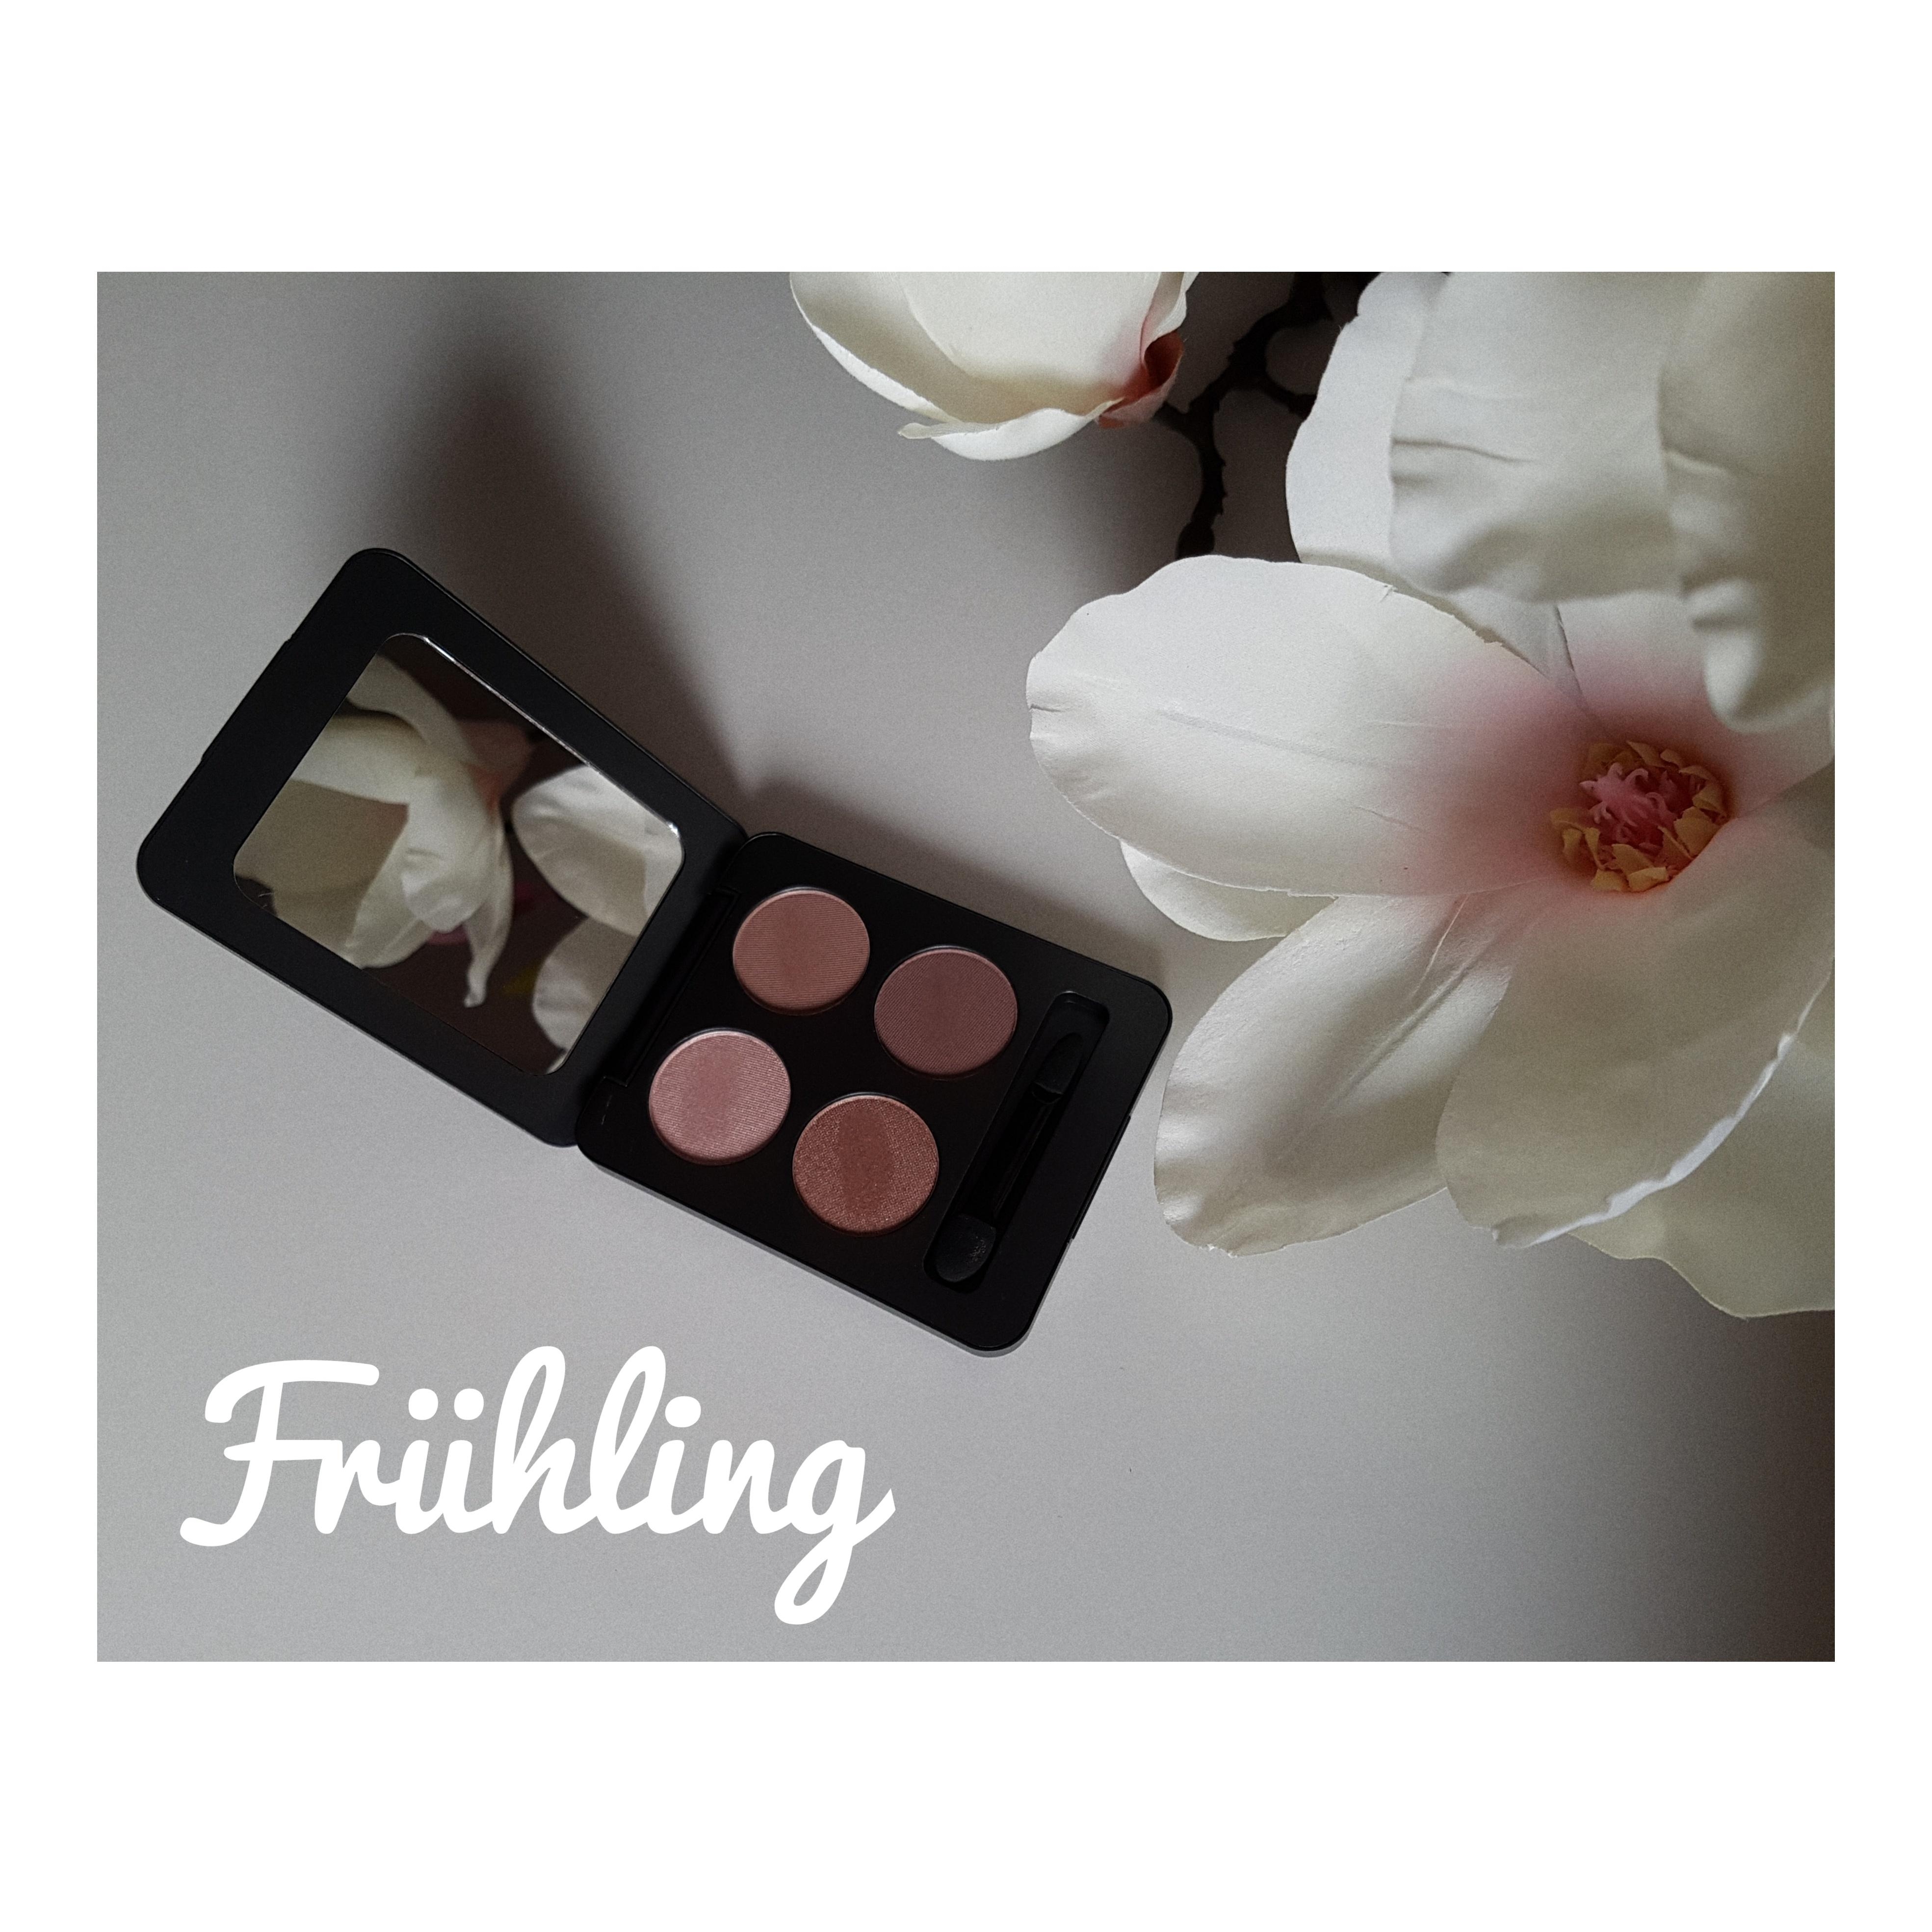 Mein Frühling sind die zarten rosé Töne und Magnoliablüten 🌸🌸🌸
#frühlingsdeko #deko #makeup 